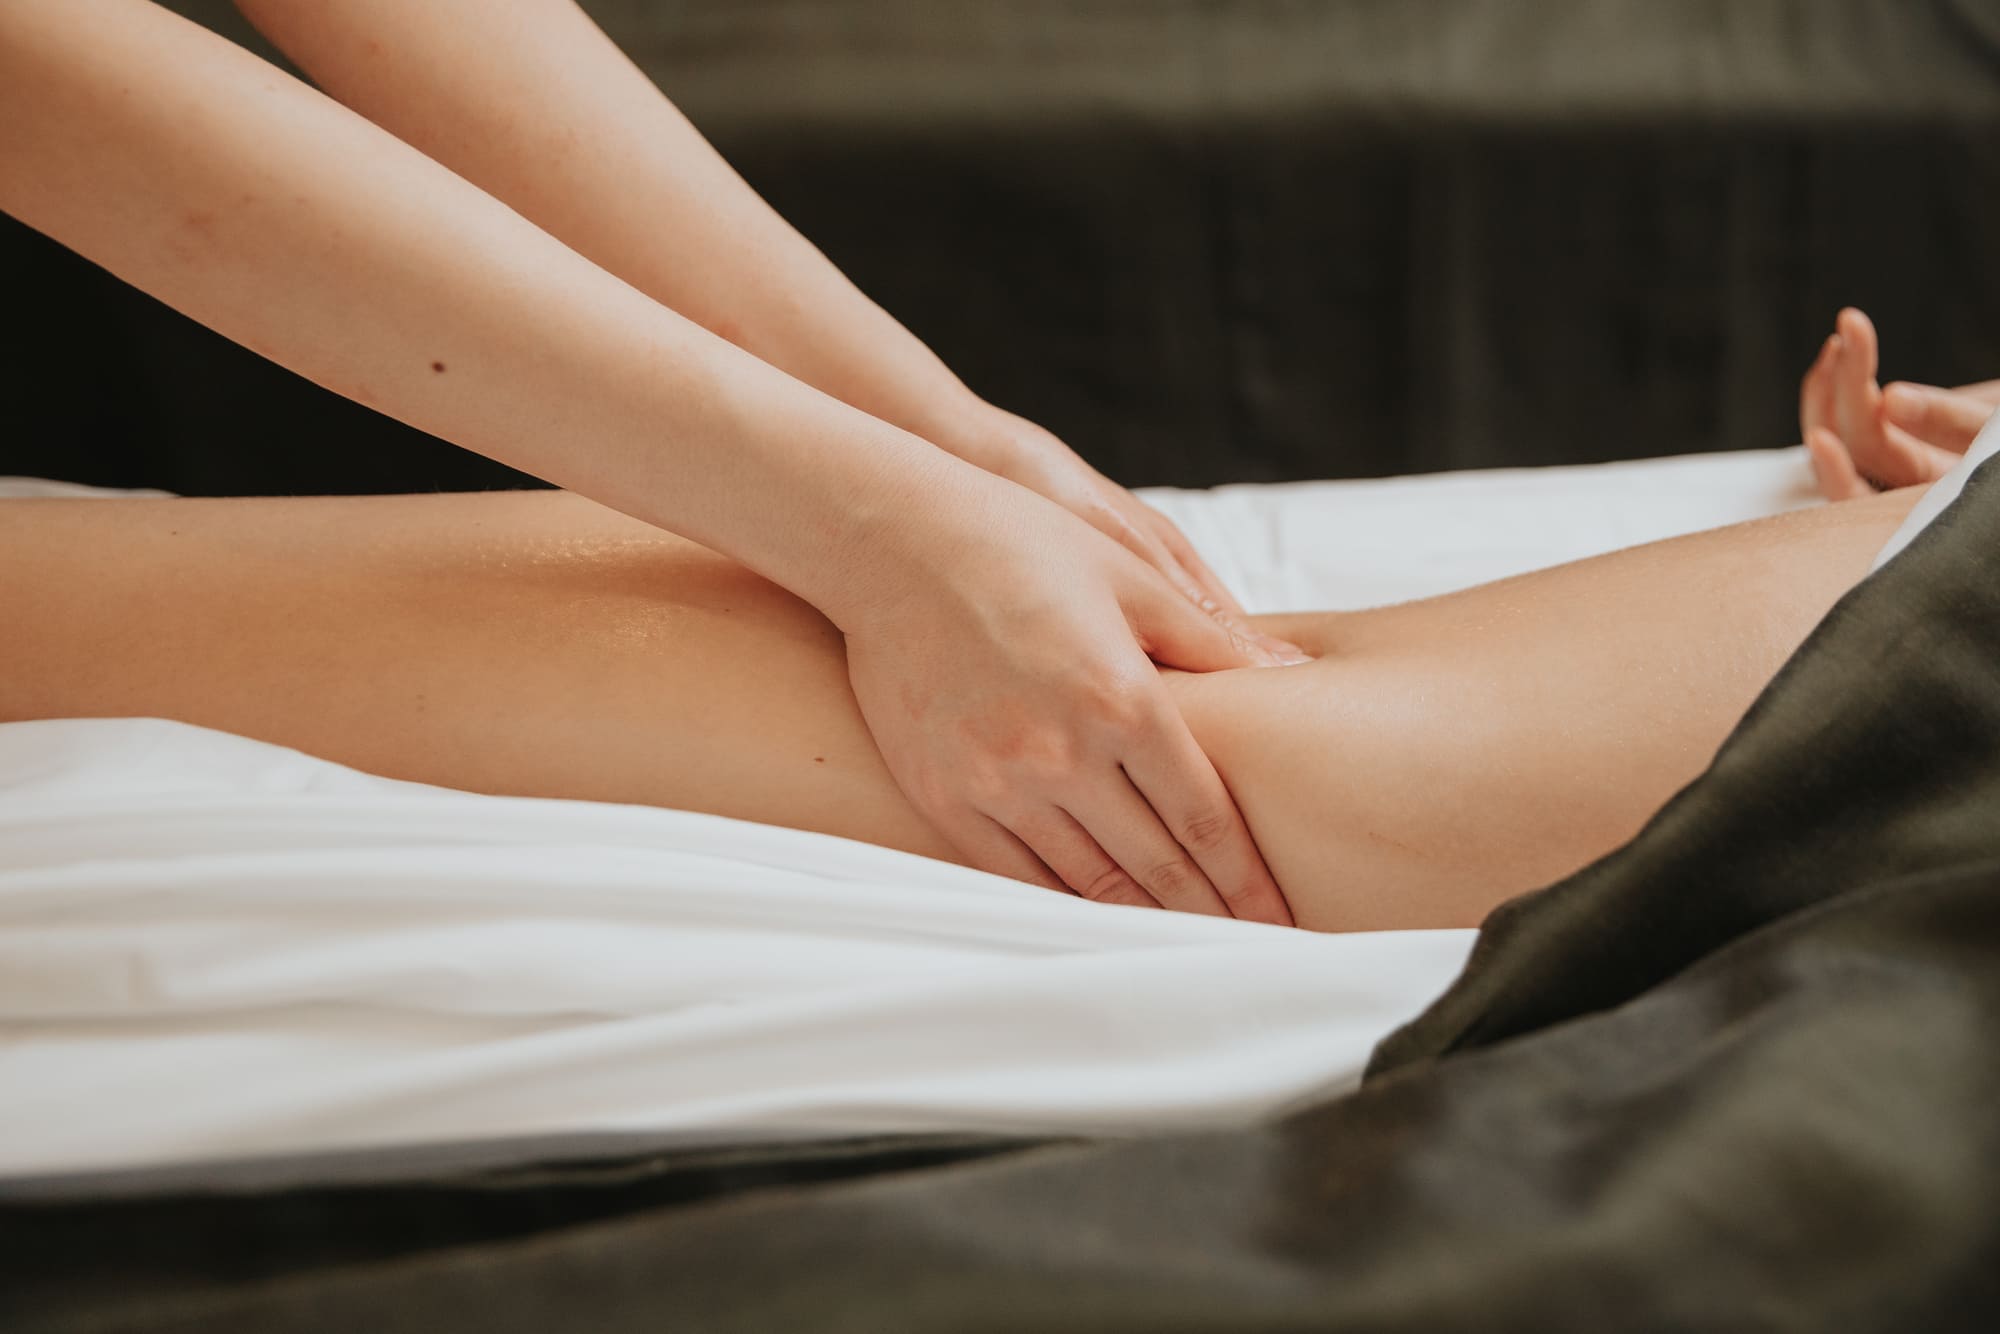 A pair of hands massaging a woman's leg